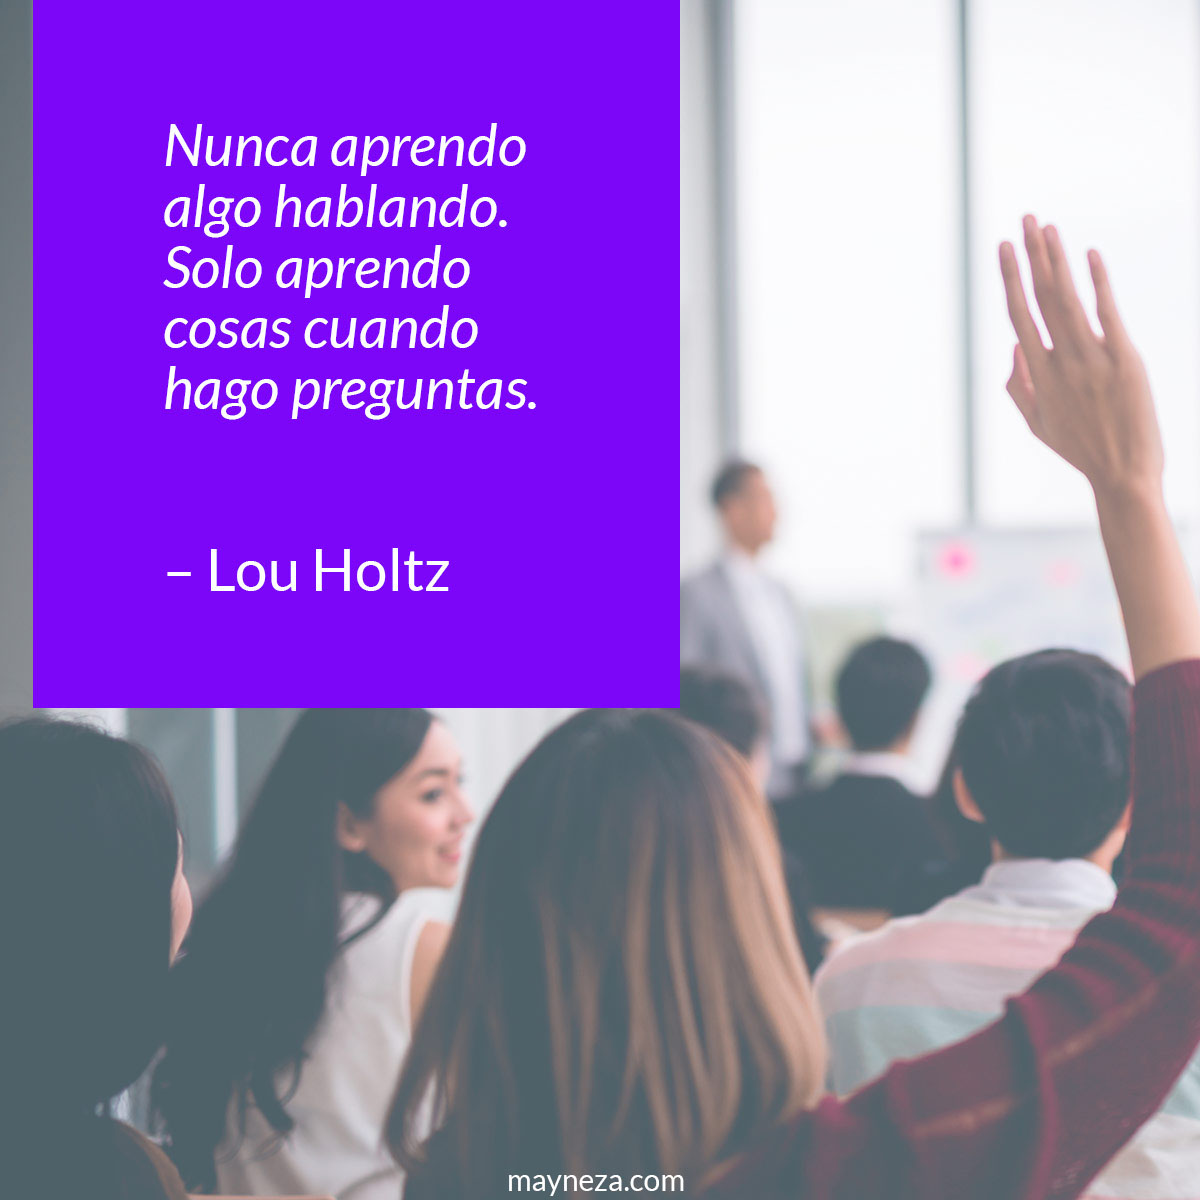 frases de motivacion para estudiantes Nunca aprendo algo hablando. Solo aprendo cosas cuando hago preguntas. – Lou Holtz